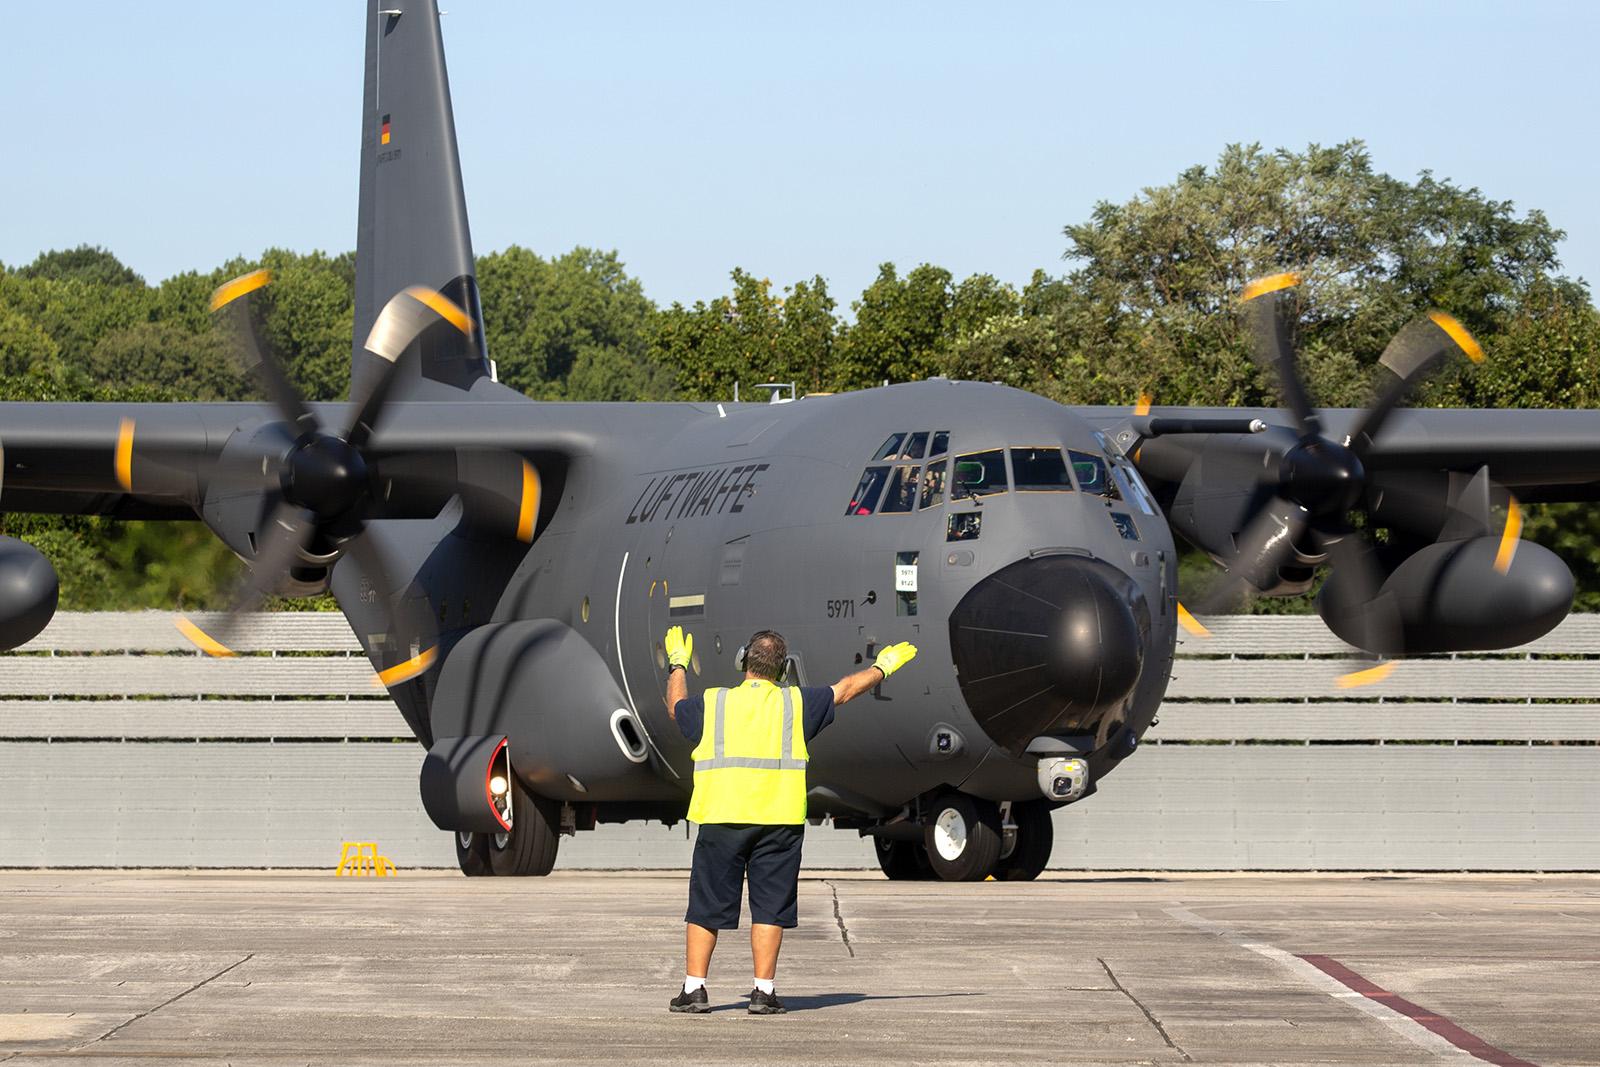 Die deutsch-französische Lufttransporteinheit wird in Kürze mit der Wartungsschulung für C-130J-Flugzeuge beginnen